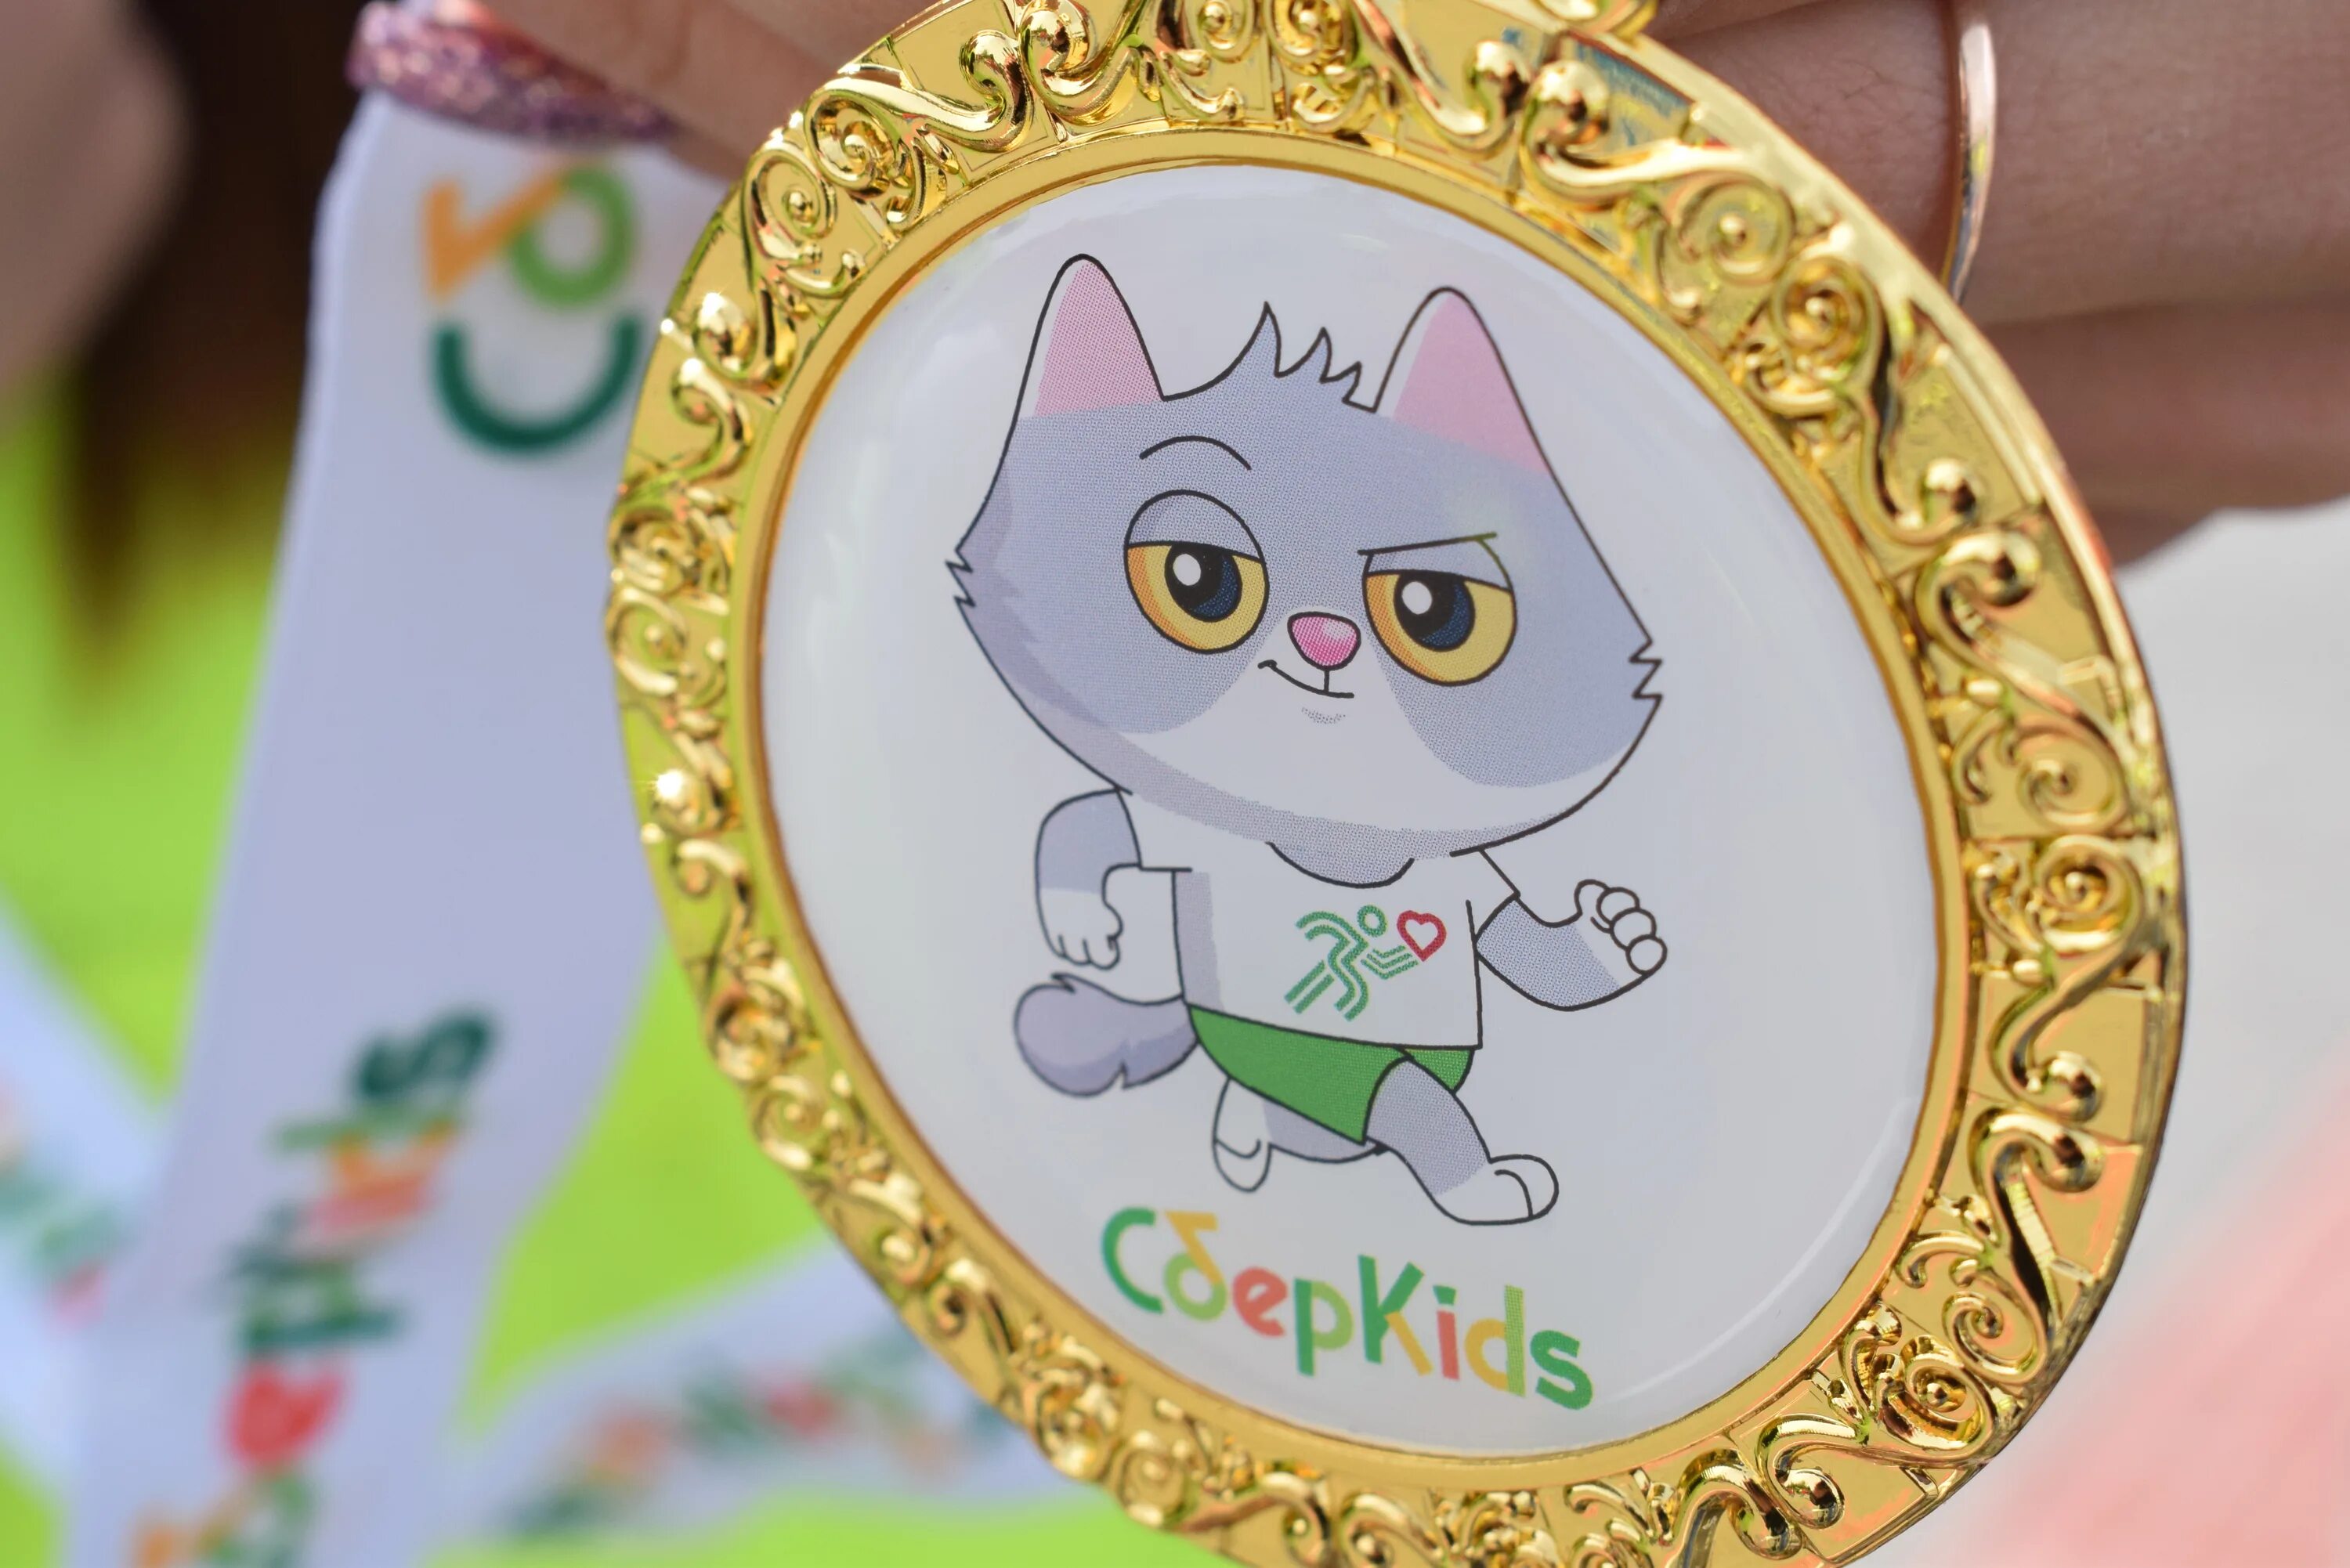 Котик с медалькой. Карта СБЕРКИДС С котом. Зеленая медаль. Медаль на детский забег.